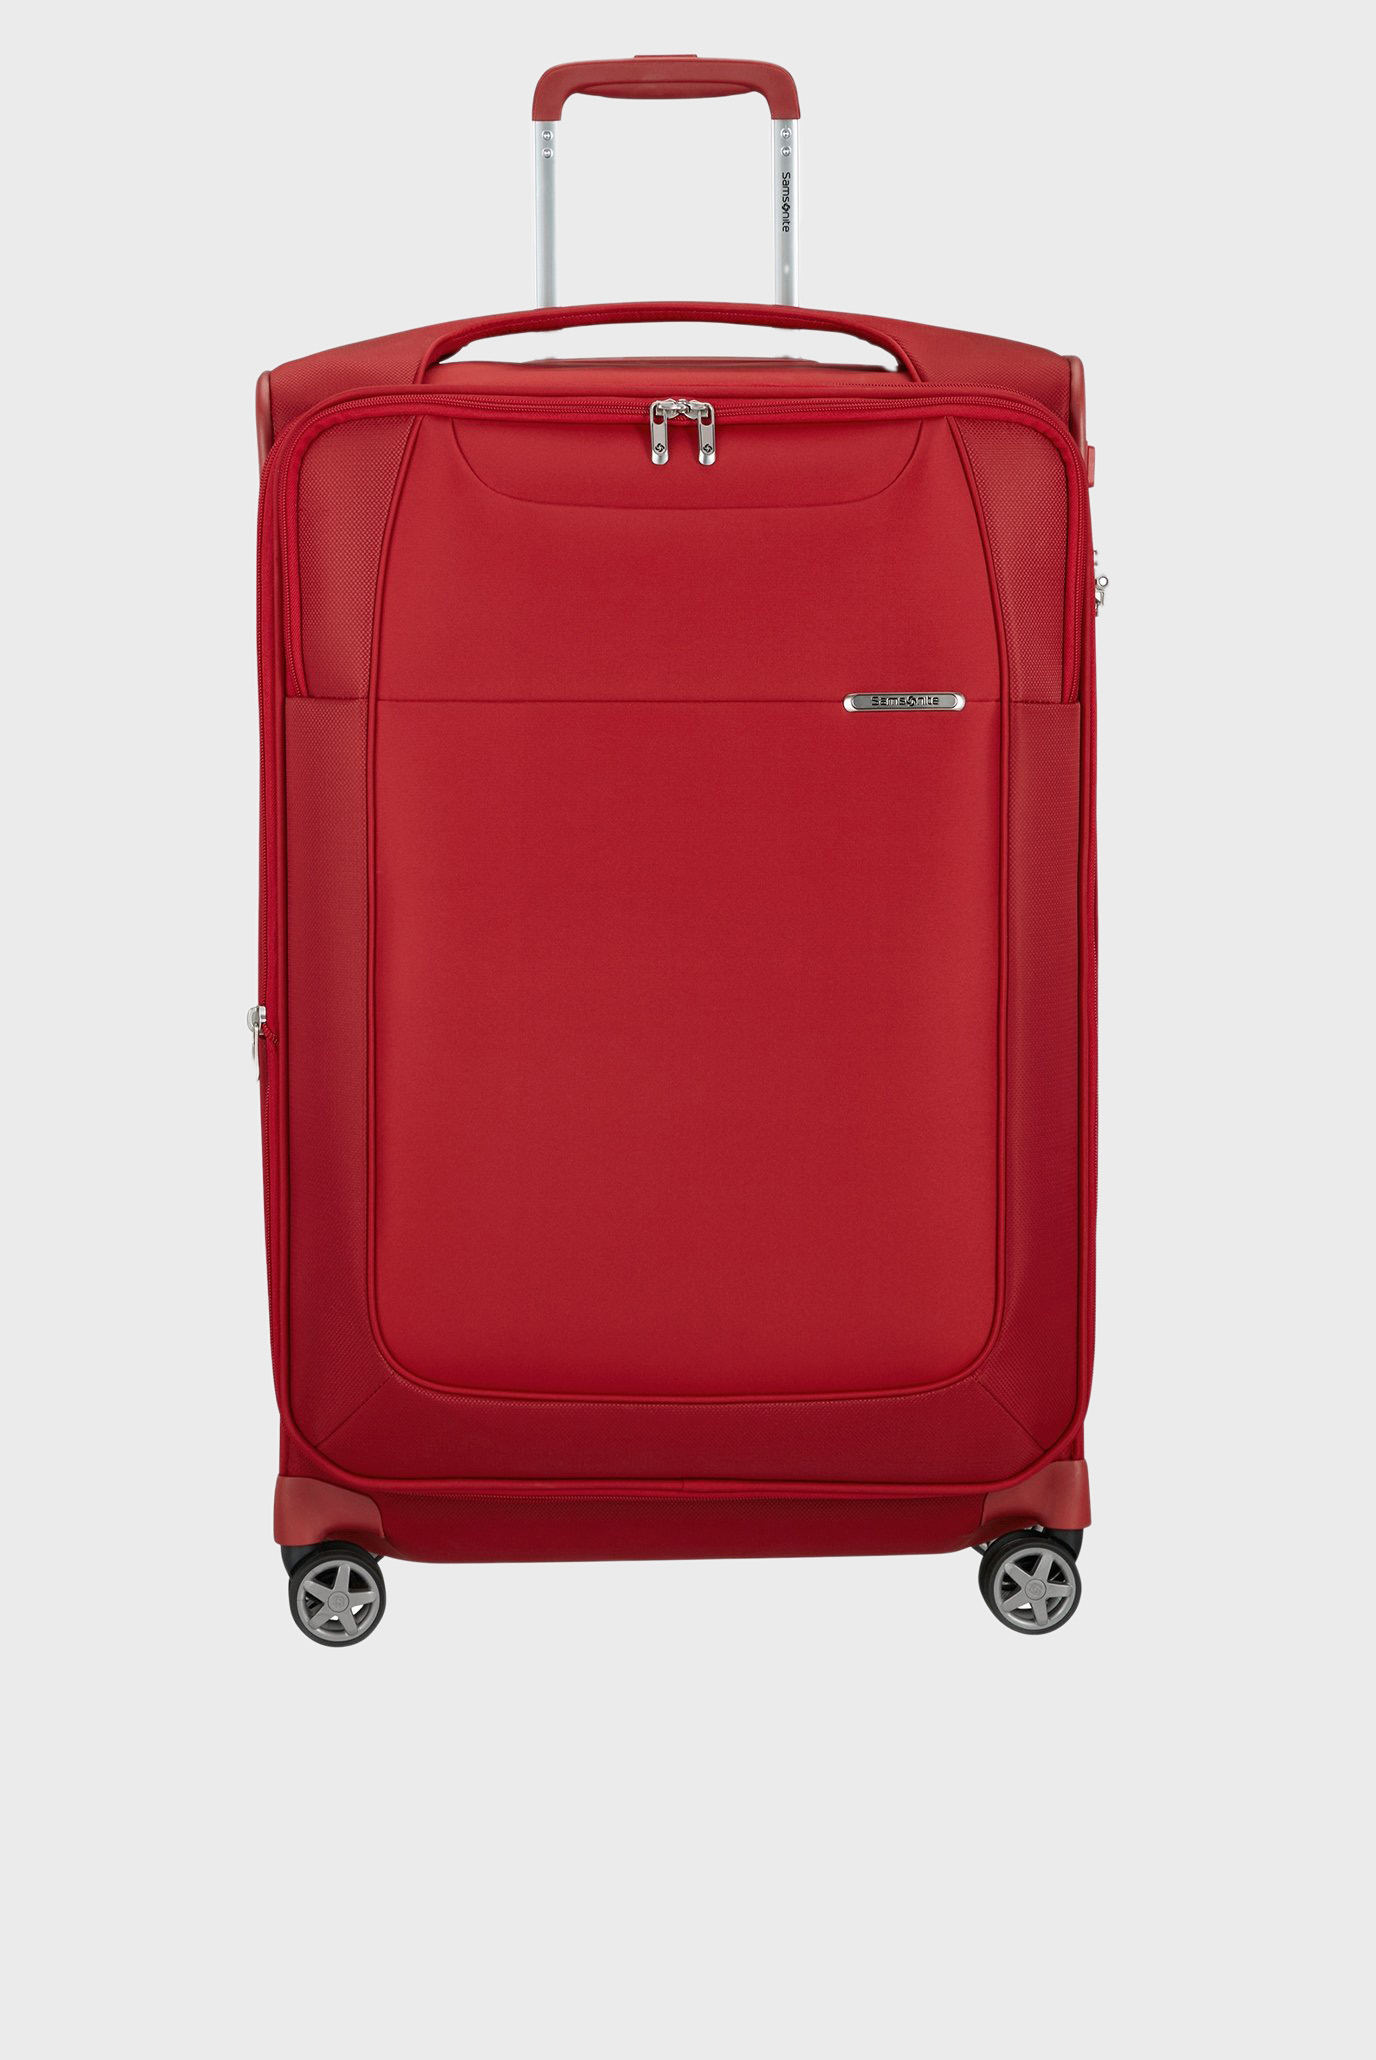 Красный чемодан 71 см D'LITE RED 1